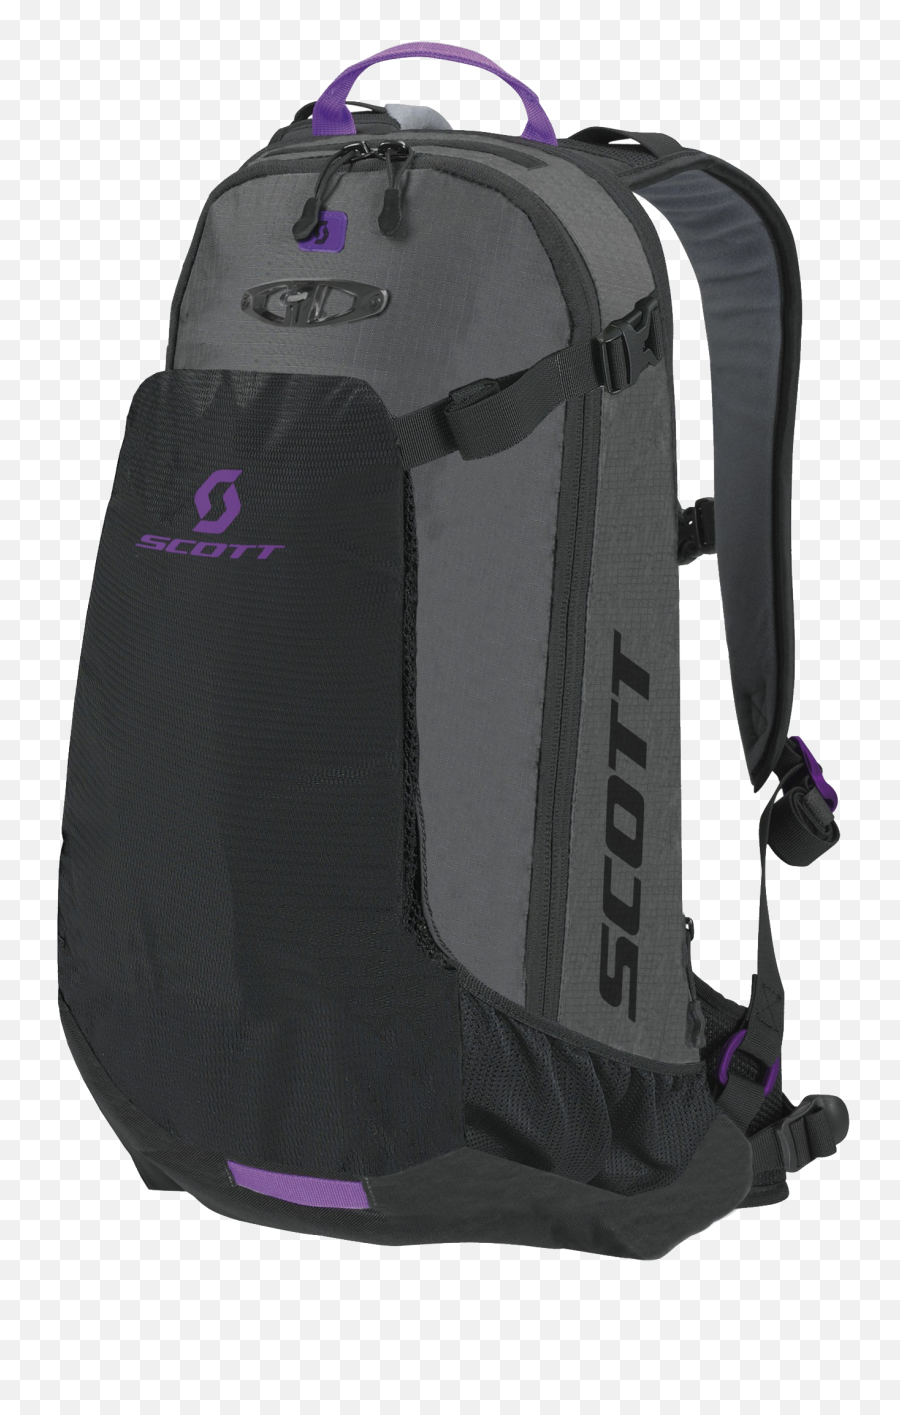 Backpack Png Image - Transparent Background Backpack Transparent Emoji,Purple Emoji Backpack